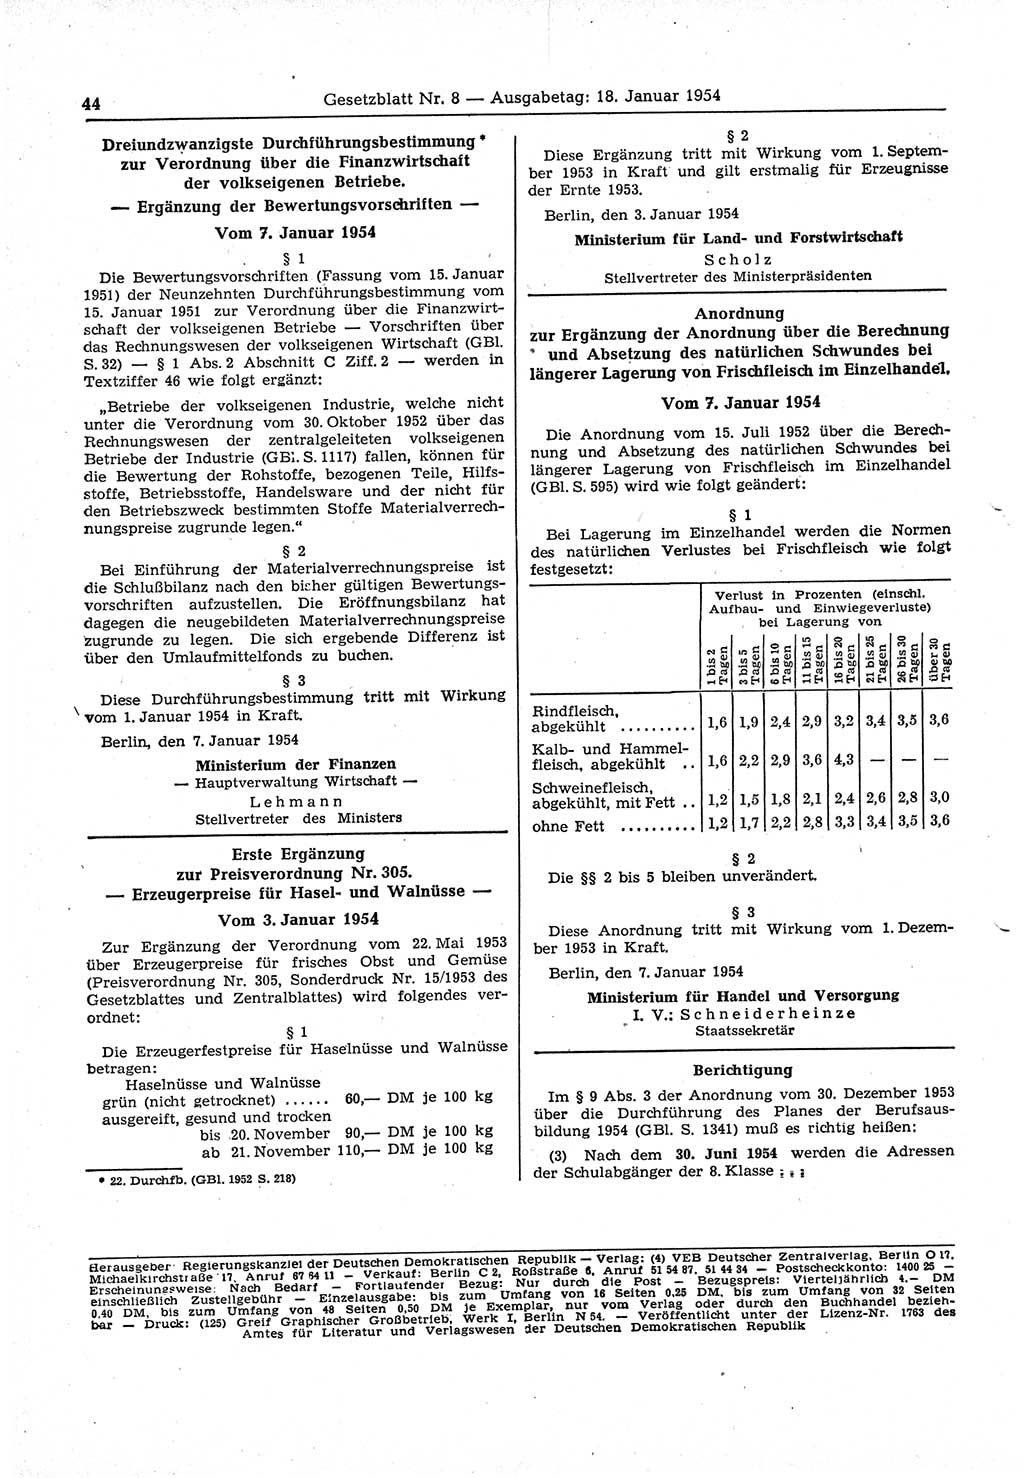 Gesetzblatt (GBl.) der Deutschen Demokratischen Republik (DDR) 1954, Seite 44 (GBl. DDR 1954, S. 44)